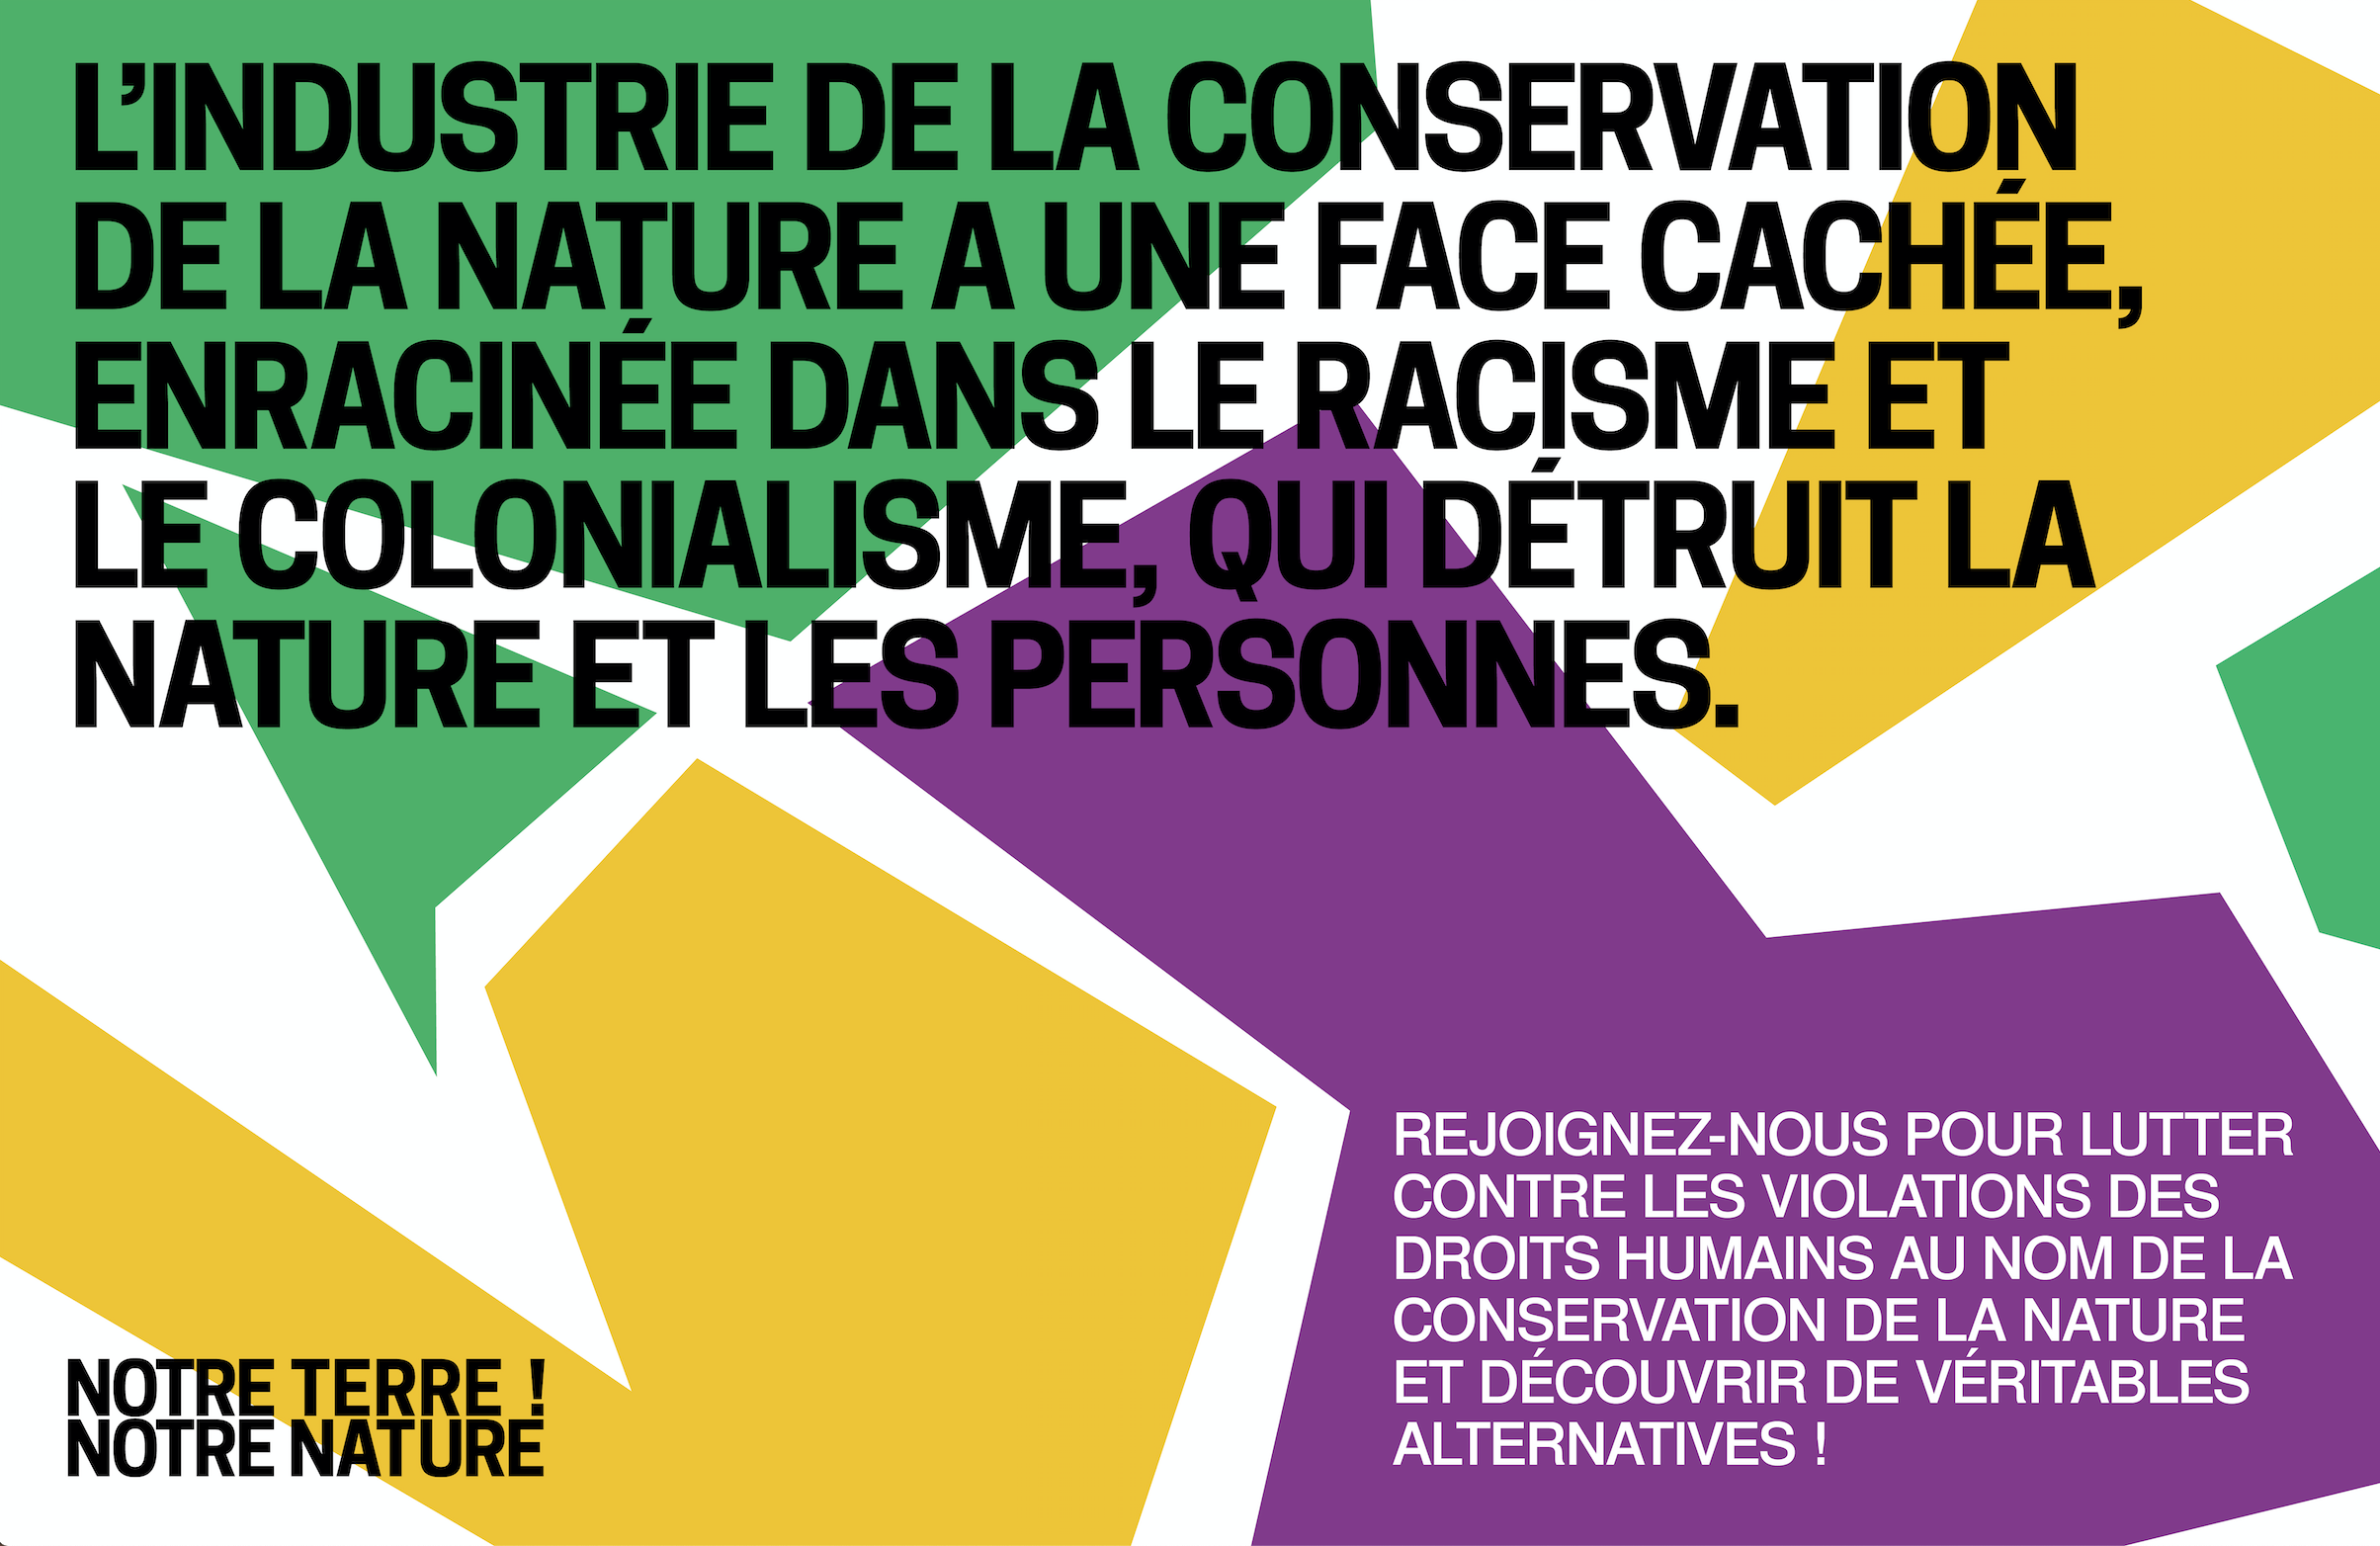 “Notre terre, notre nature” : le premier congrès pour décoloniser la conservation de la nature.